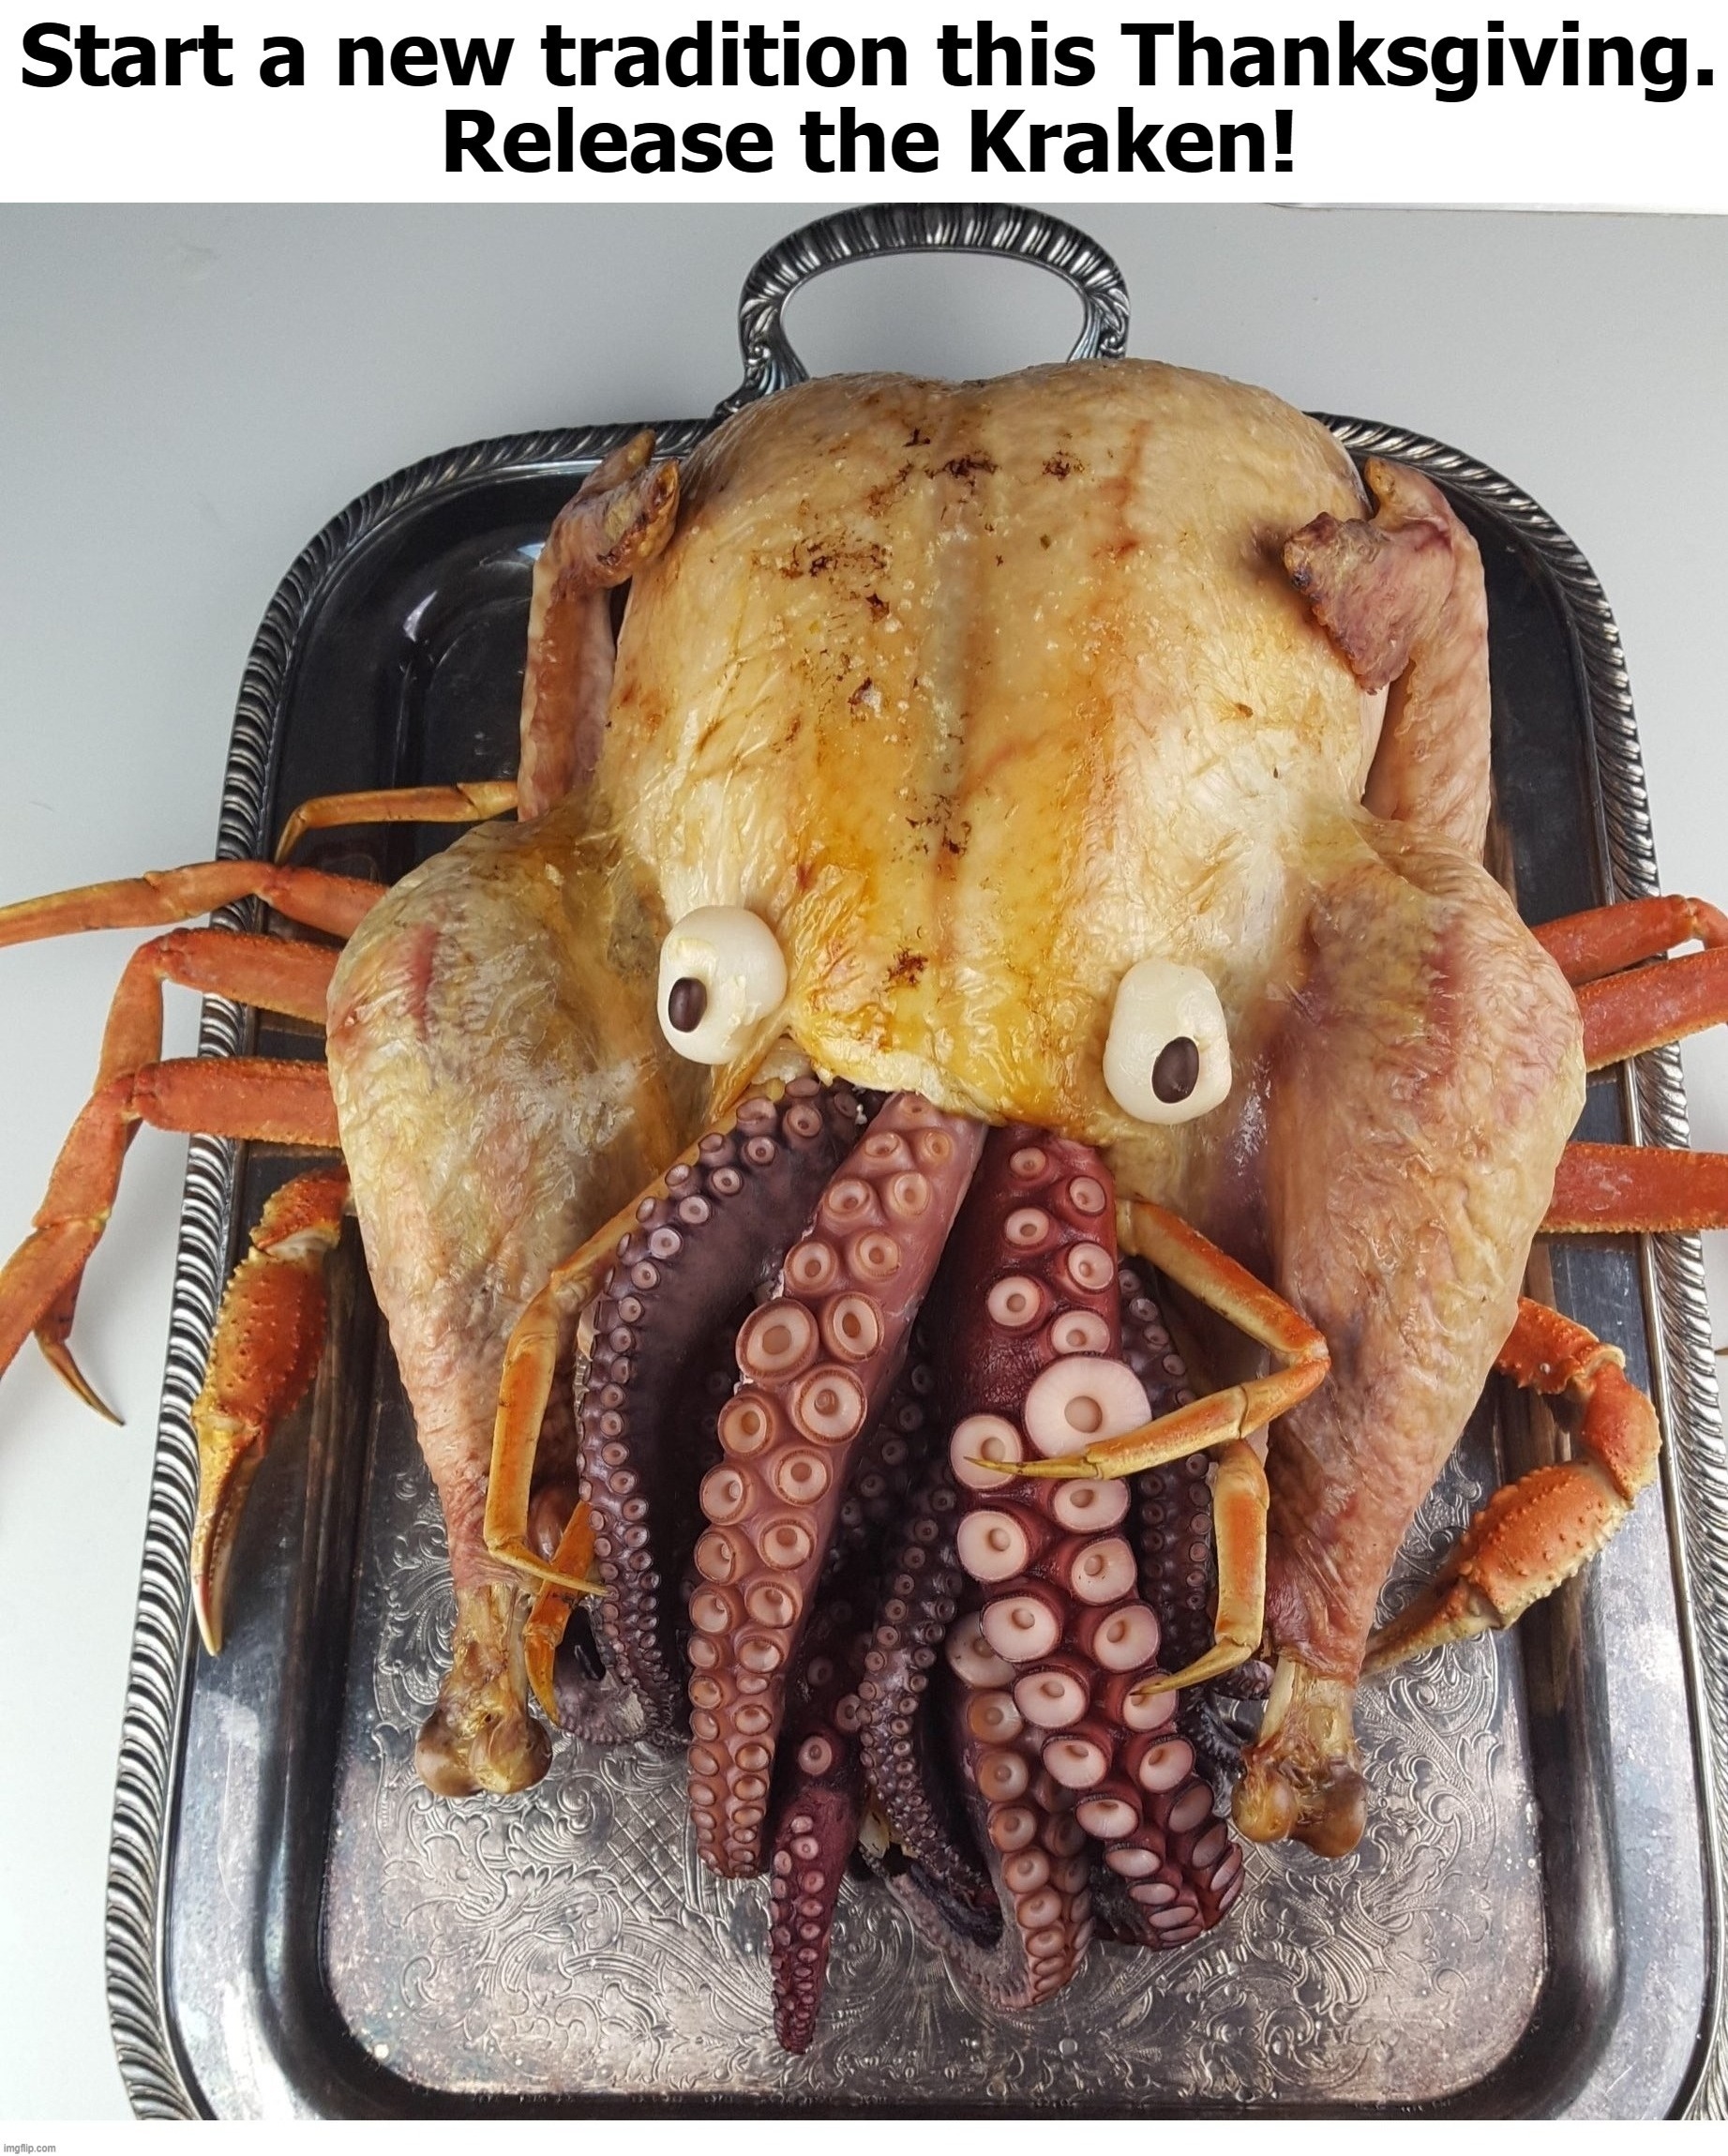 Start a New Tradition This Thanksgiving. | image tagged in release the kraken,kraken,turkraken,turducken,joe exotic,funny | made w/ Imgflip meme maker